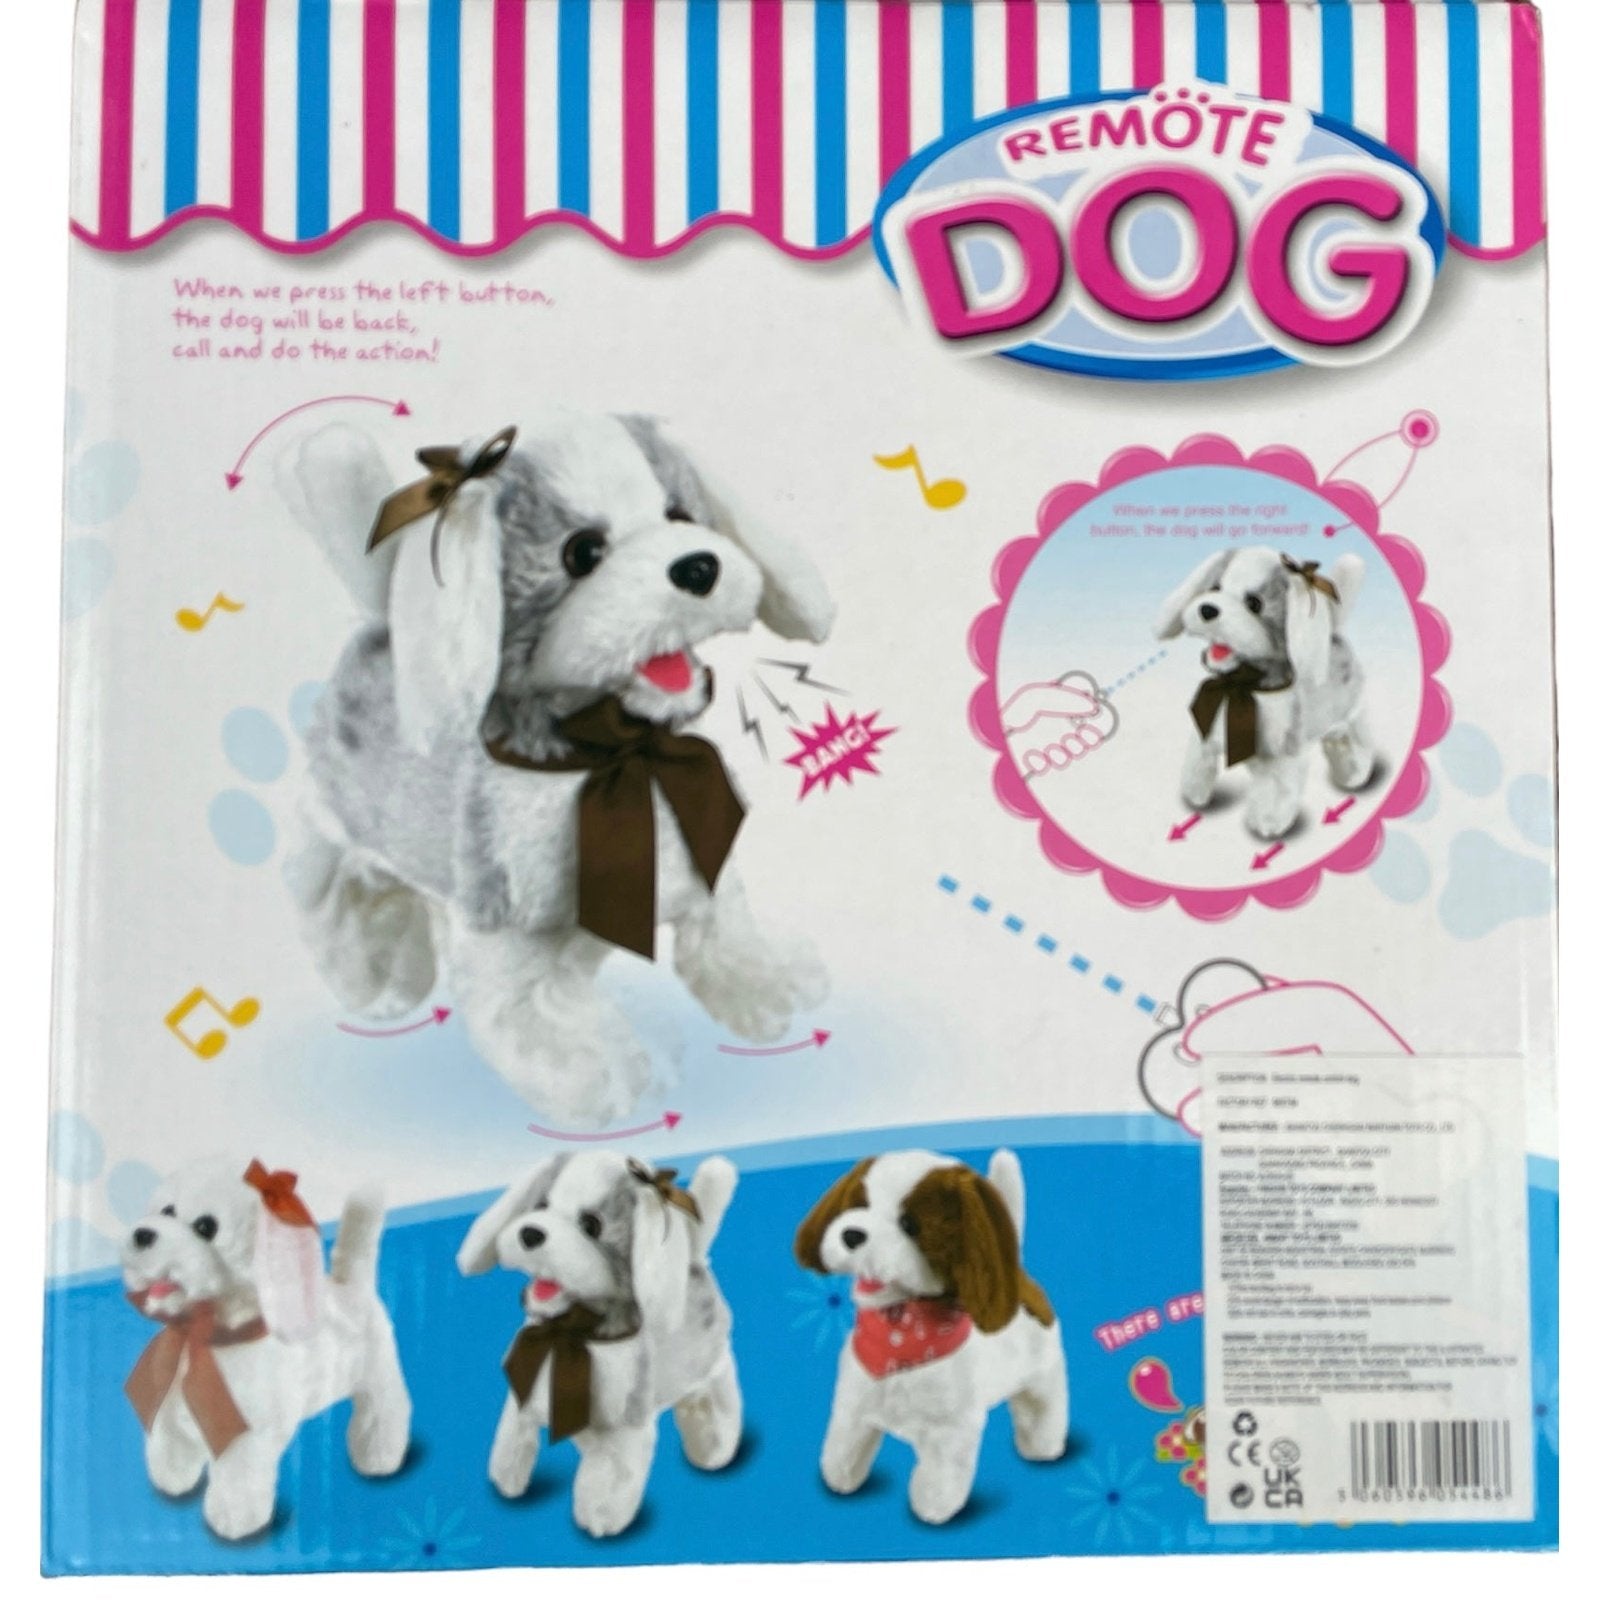 Remote Control Dog Toy for Kids - kidzbuzzz